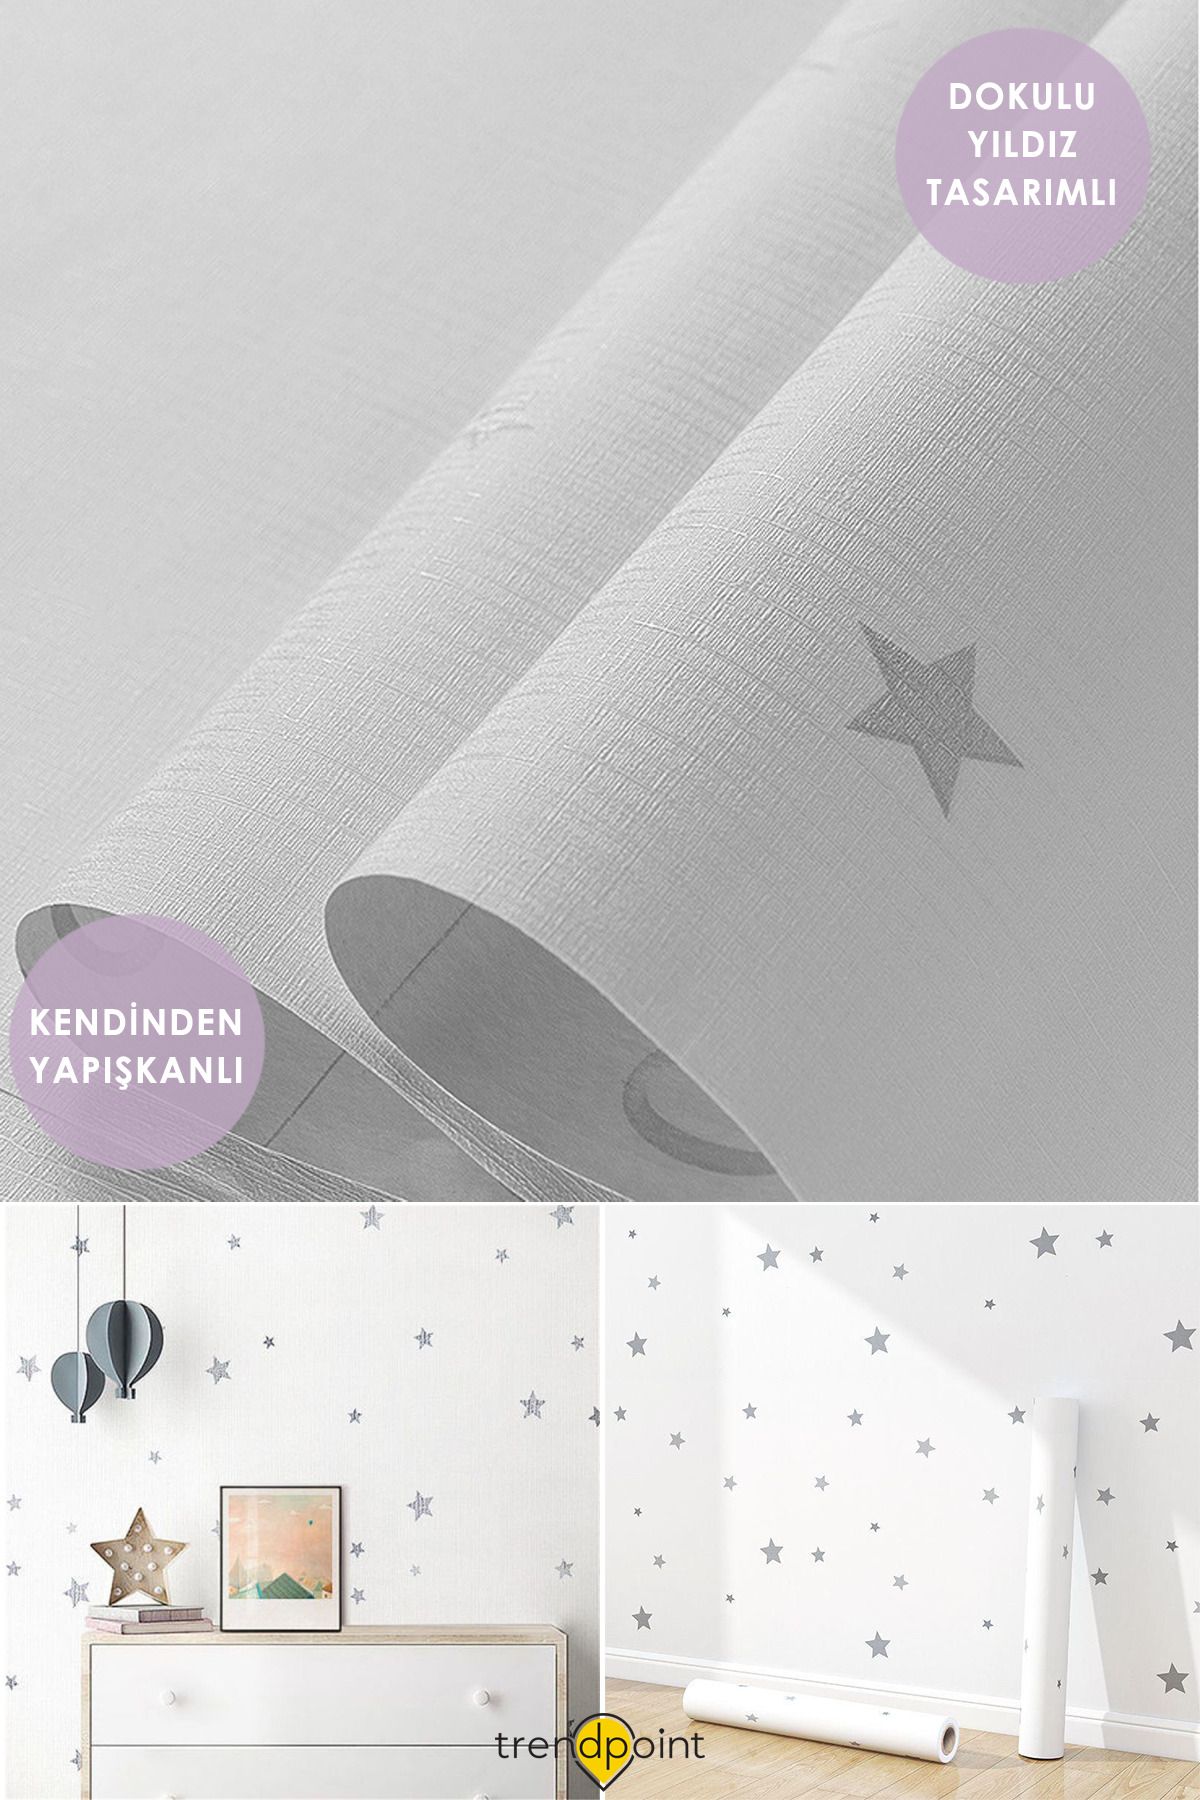 Trendpoint Kendinden Yapışkanlı 60cm×100cm Beyaz Yıldızlı Duvar Kağıdı Dolap Çocuk Odası Kaplama